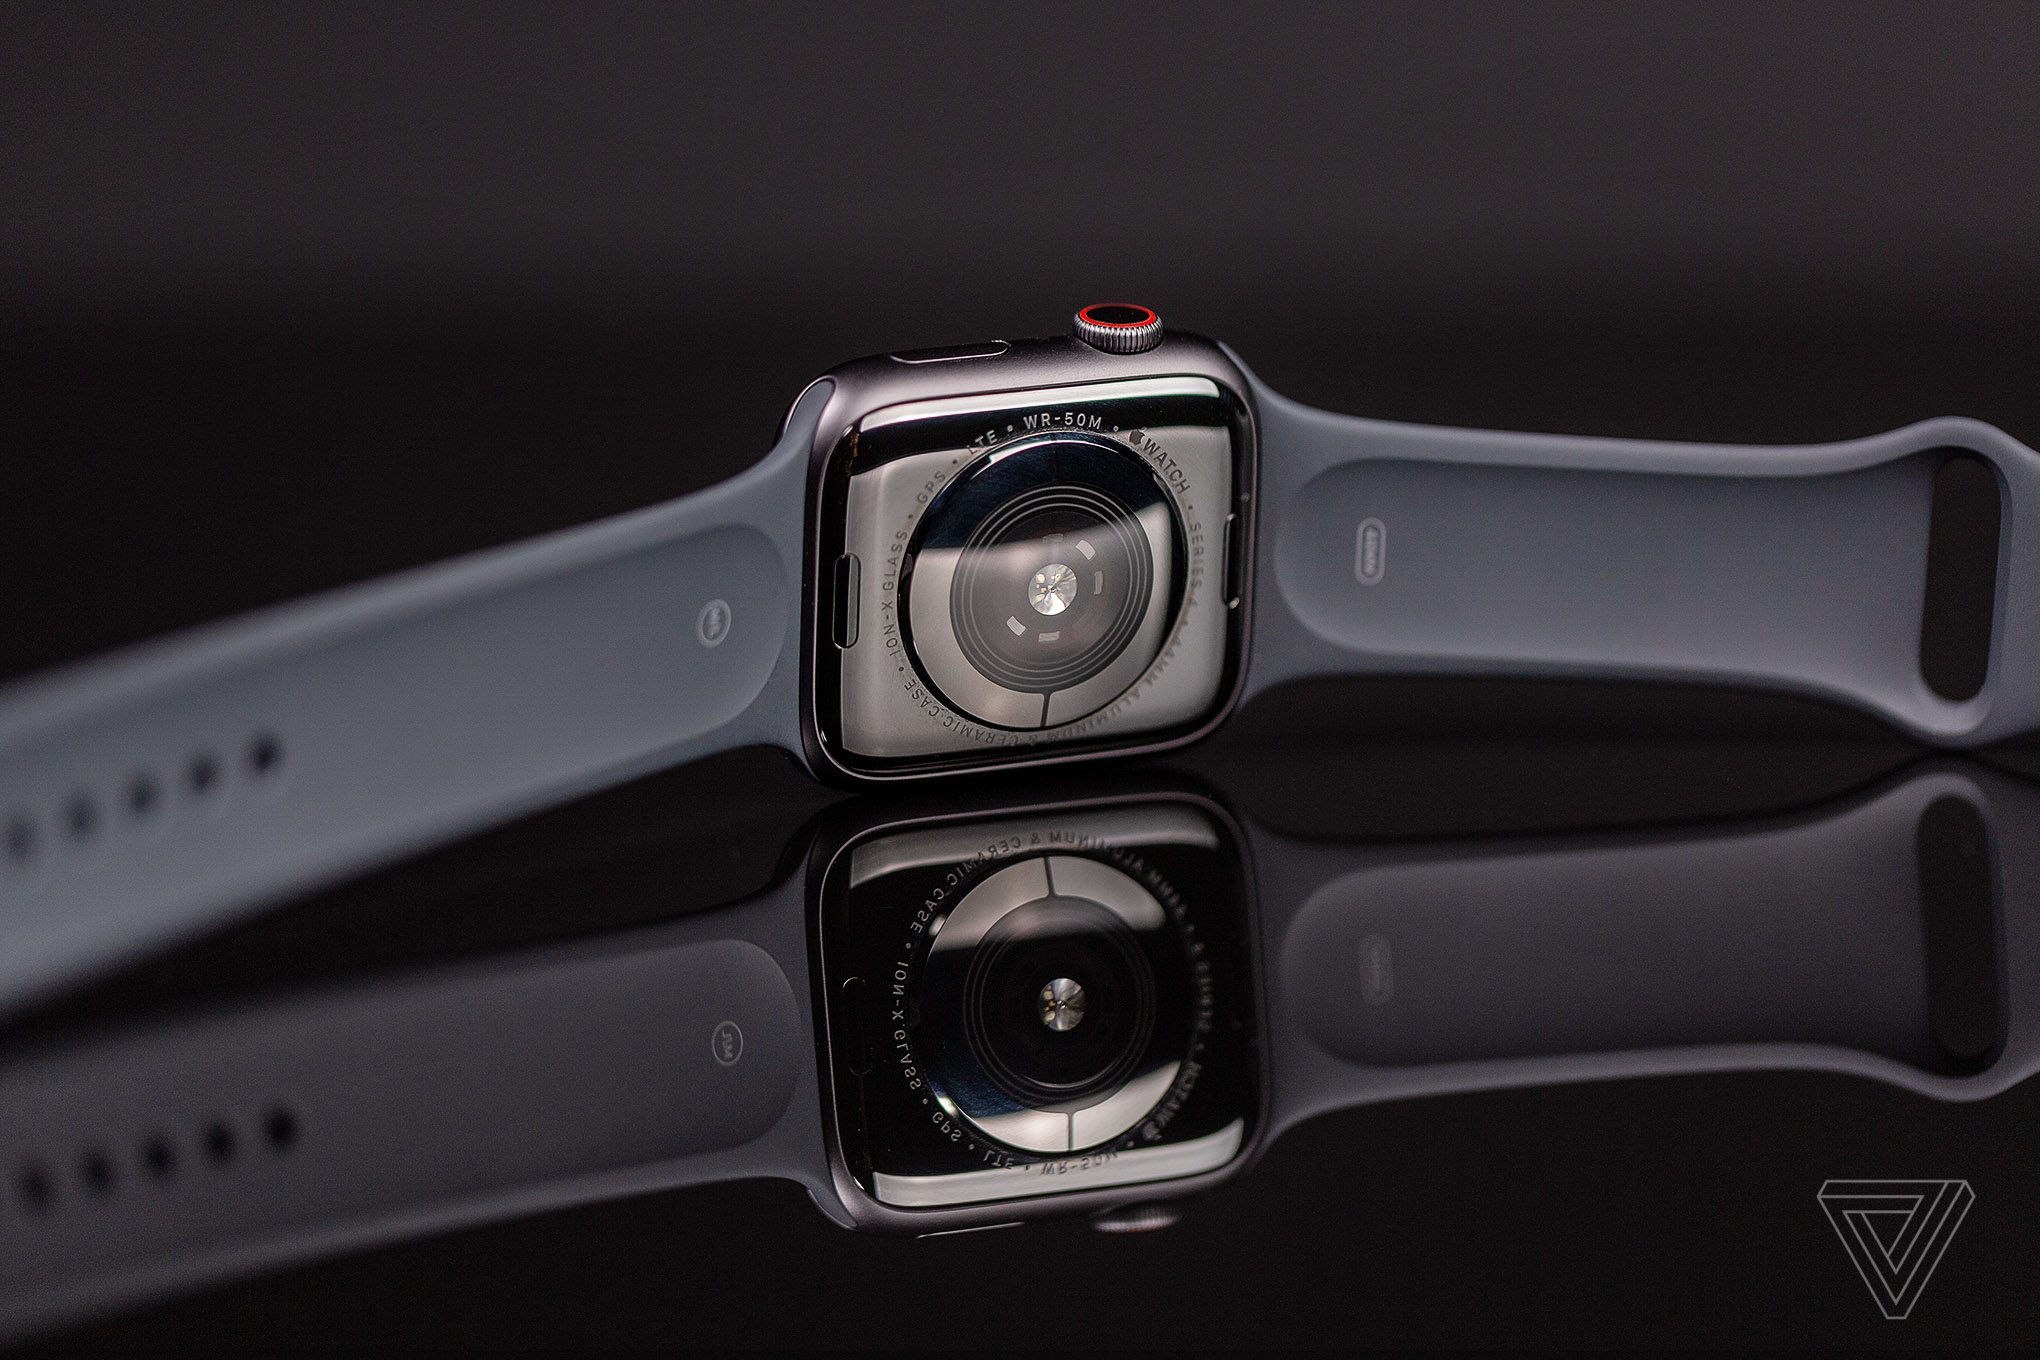 Đánh giá Apple Watch Series 4: Đã đỉnh nay còn đỉnh hơn